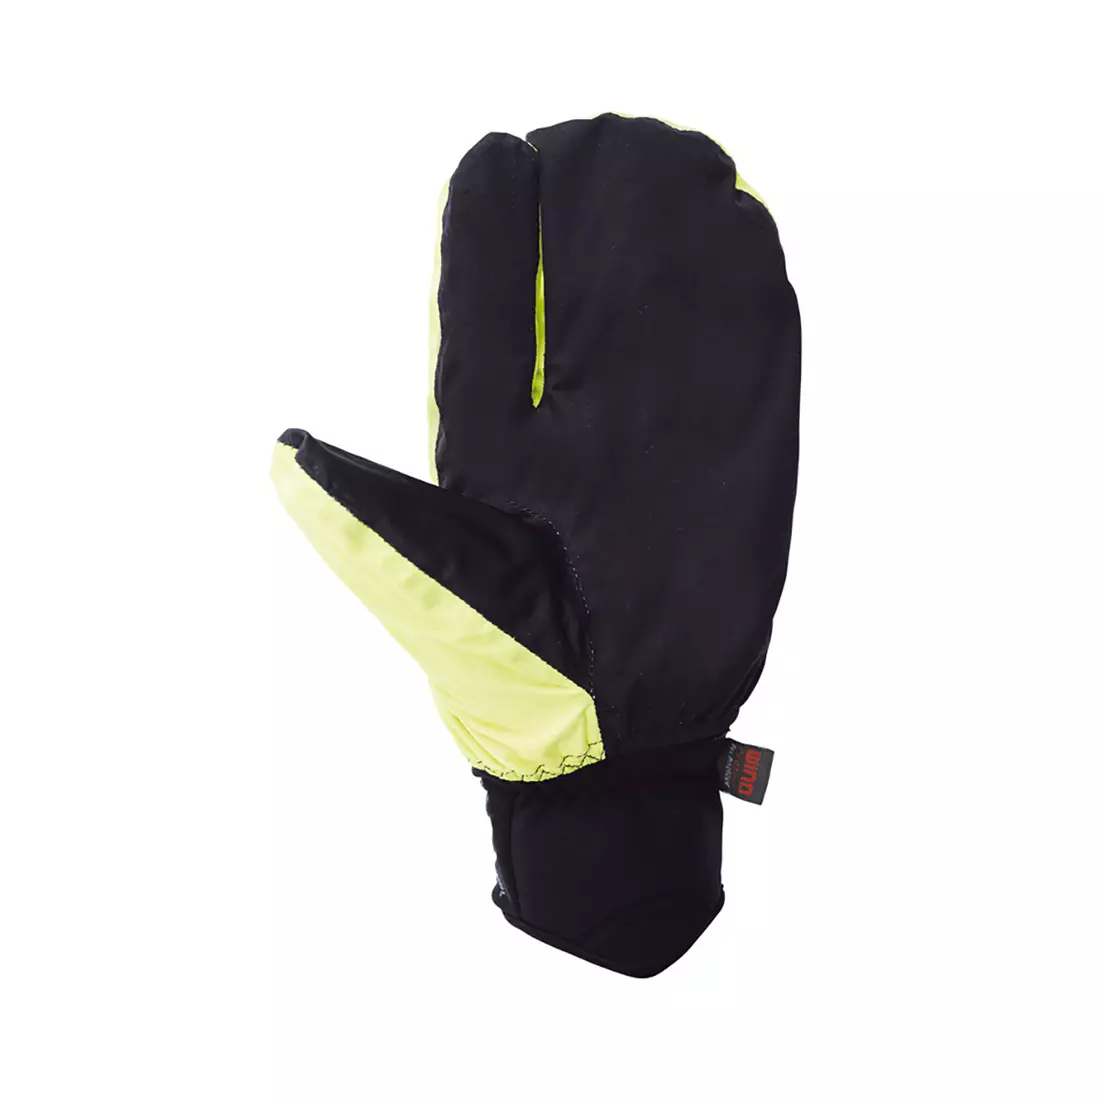 CHIBA EXPRESS+ ľahké zimné cyklistické rukavice s vreckom, fluór / čierna 3110719